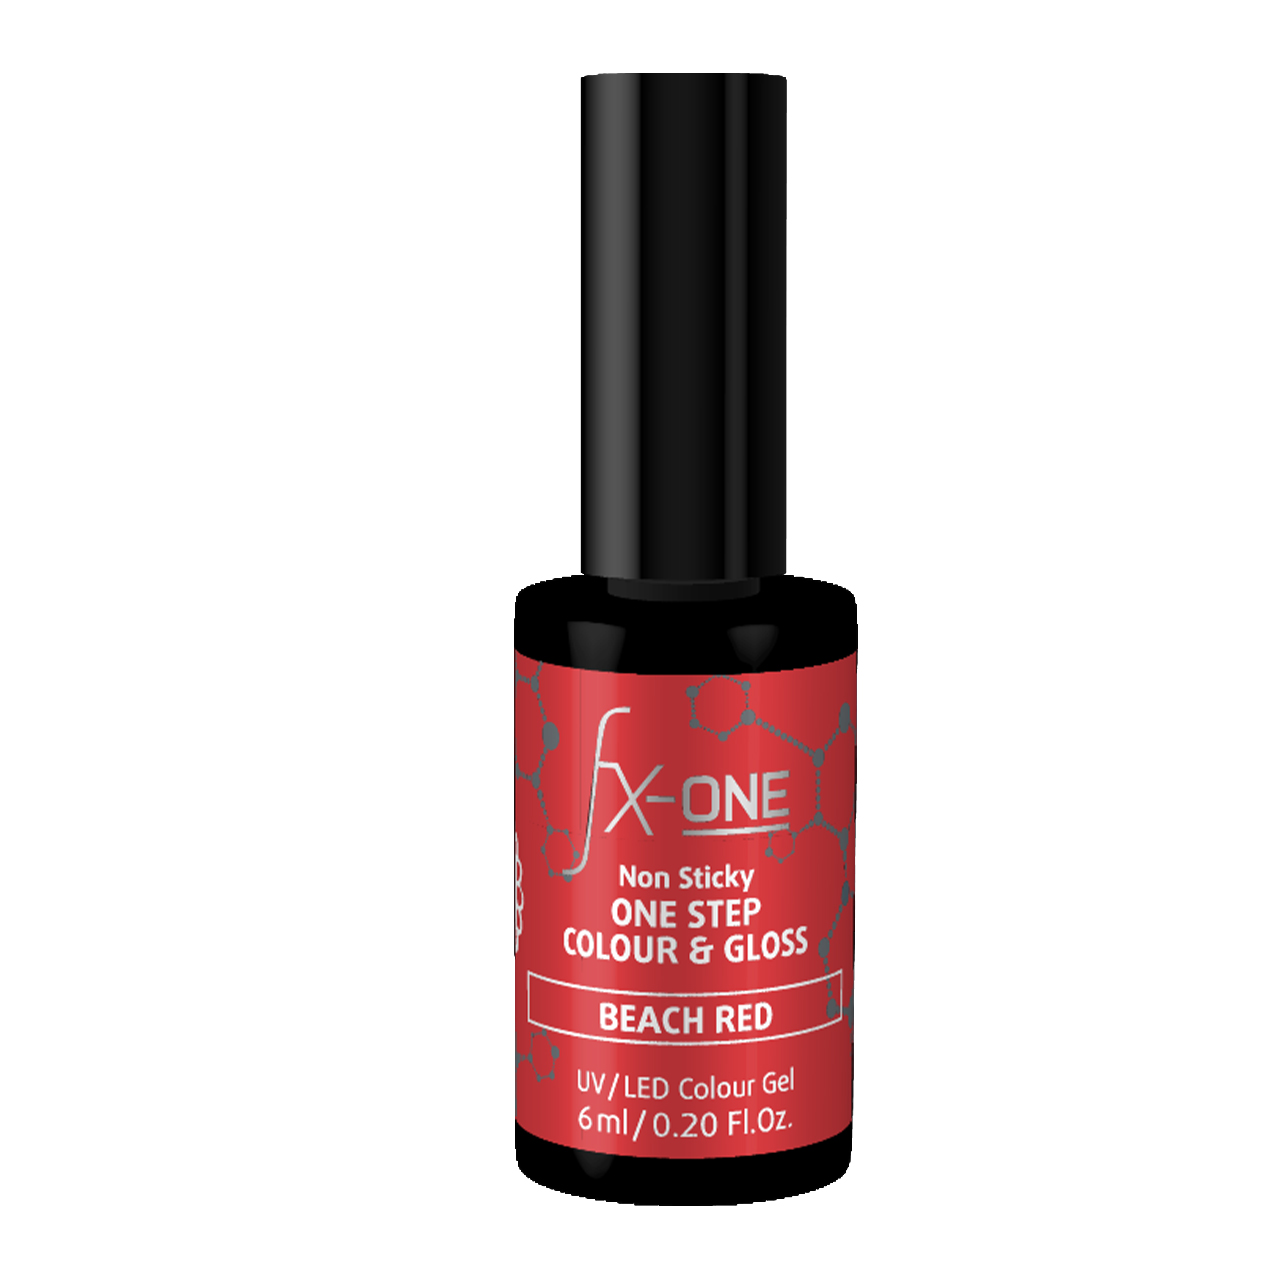 FX-ONE Colour & Gloss Beach Red 6ml